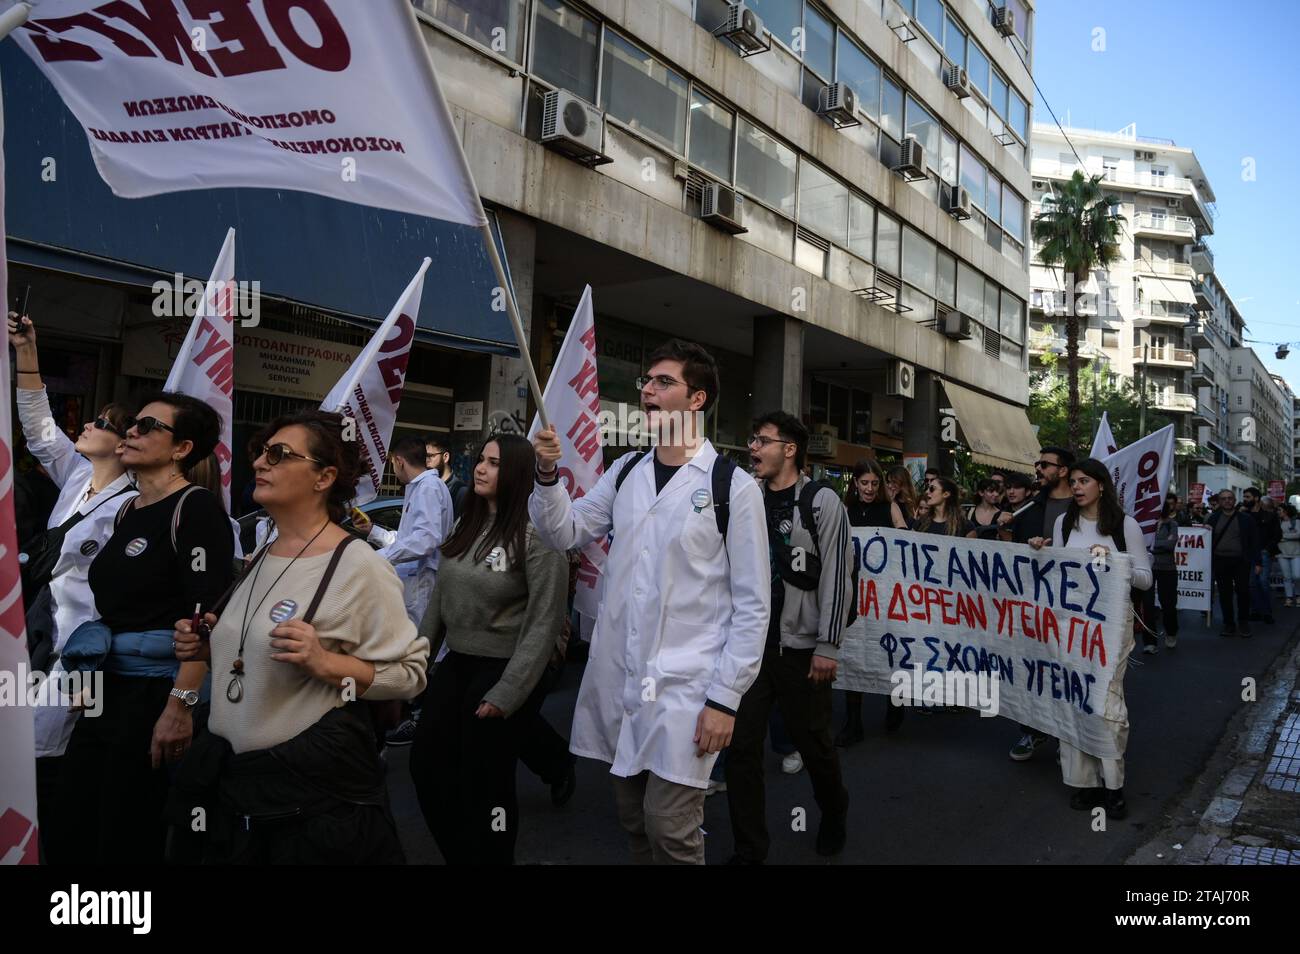 Streikende Krankenhäuser Ärzte schreien während eines Protestes, der Gehaltssteigerungen und Personaleinstellungen in Athen, Griechenland, fordert, Slogans. Quelle: Dimitris Aspiotis/Alamy Stockfoto